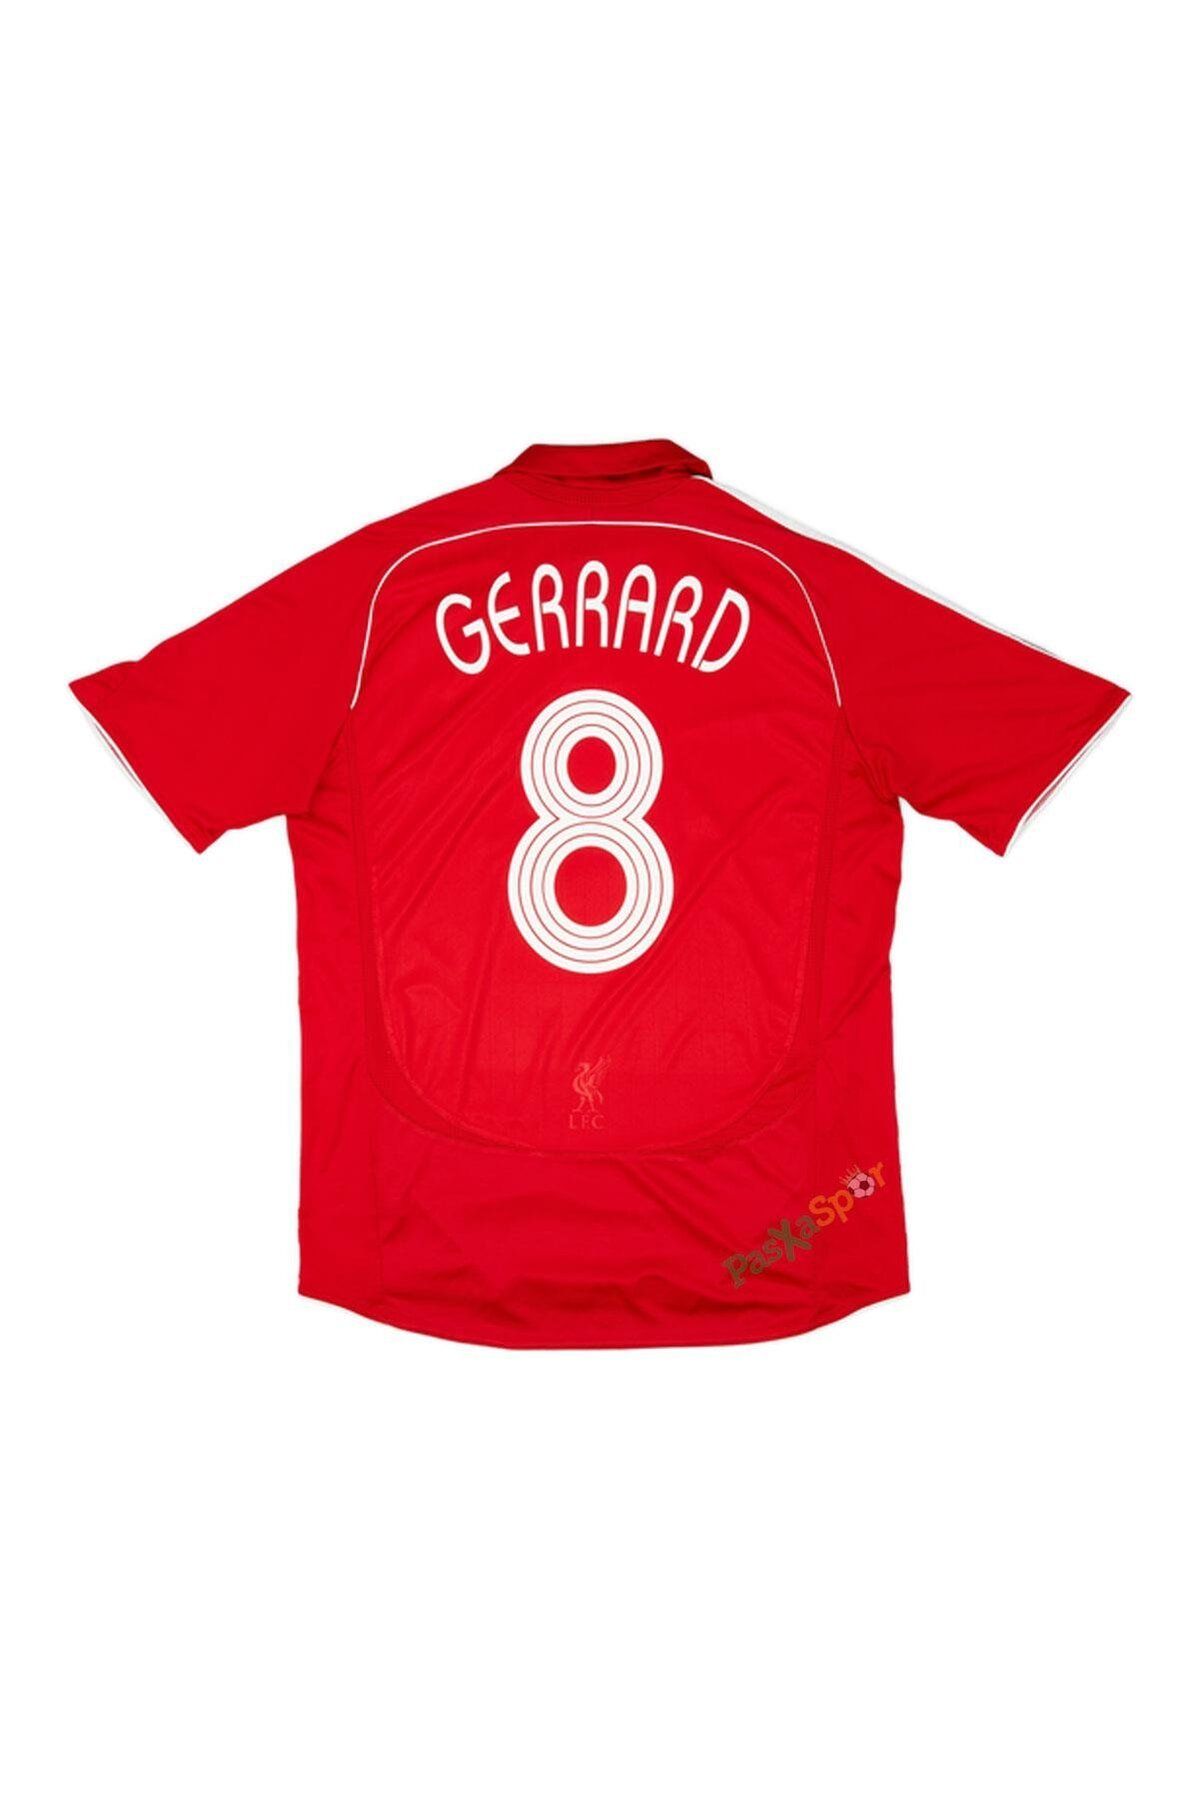 Pasxaspor Profesyonel İthal Kalite Gerrard Liverpool 2007 Sezonu Şampiyonlar Ligi Finali Kısa Kol Forması